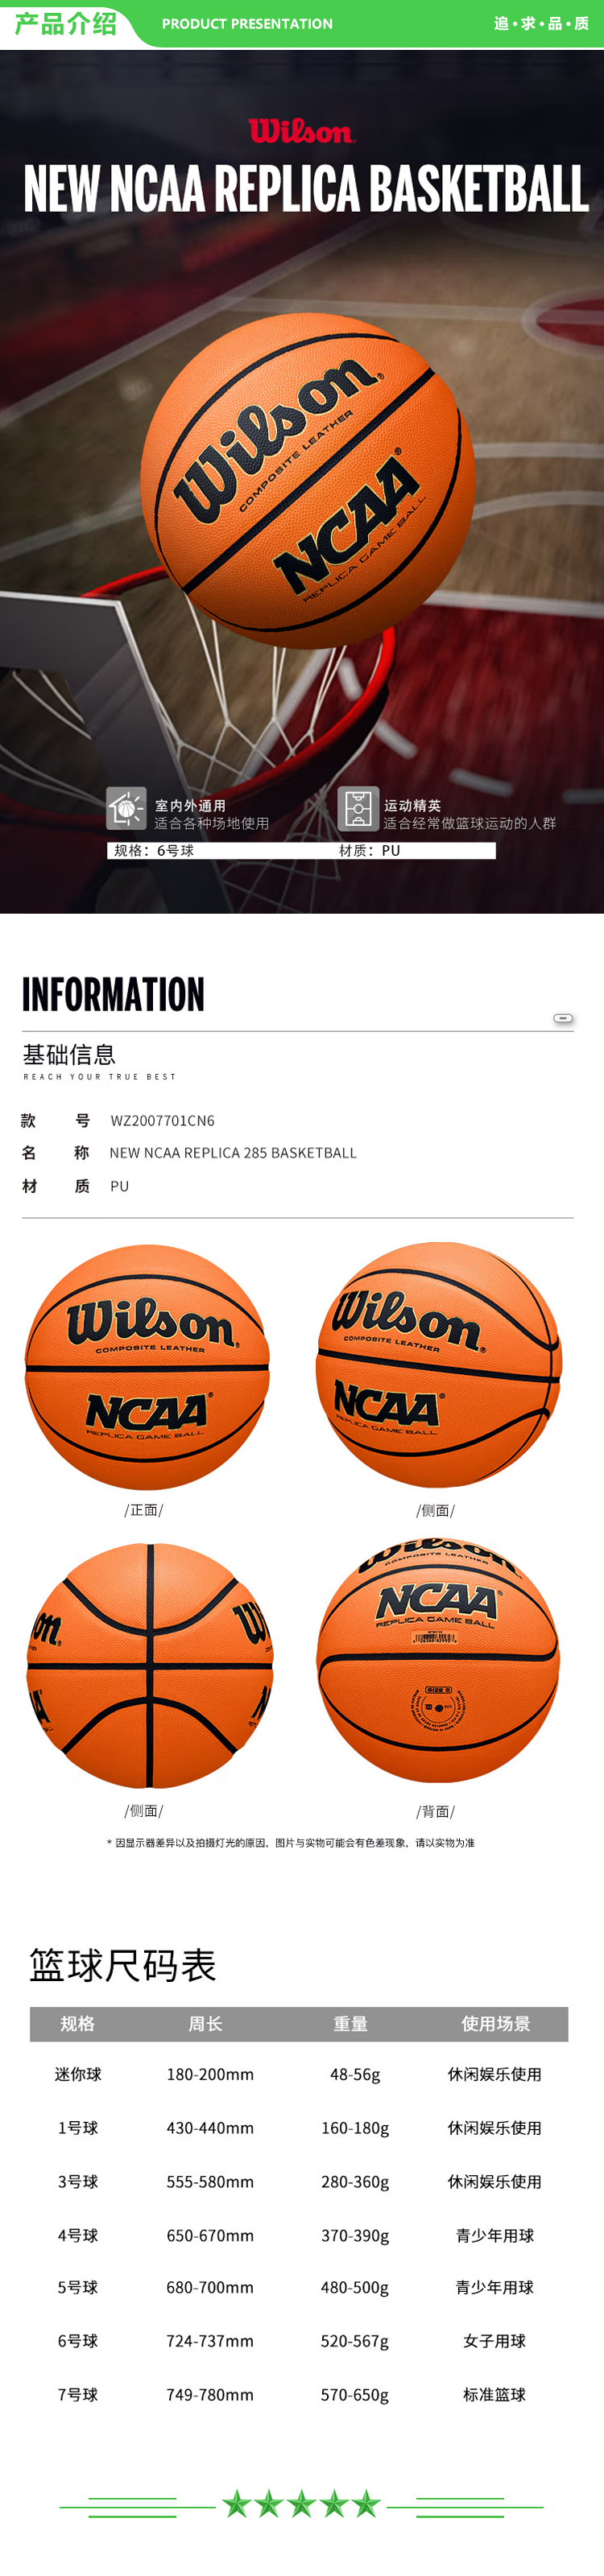 威尔胜 Wilson WZ2007701CN6 2022NCAA系列NEW NCAA REPLICA 285 BASKETBALL成人篮球 .jpg